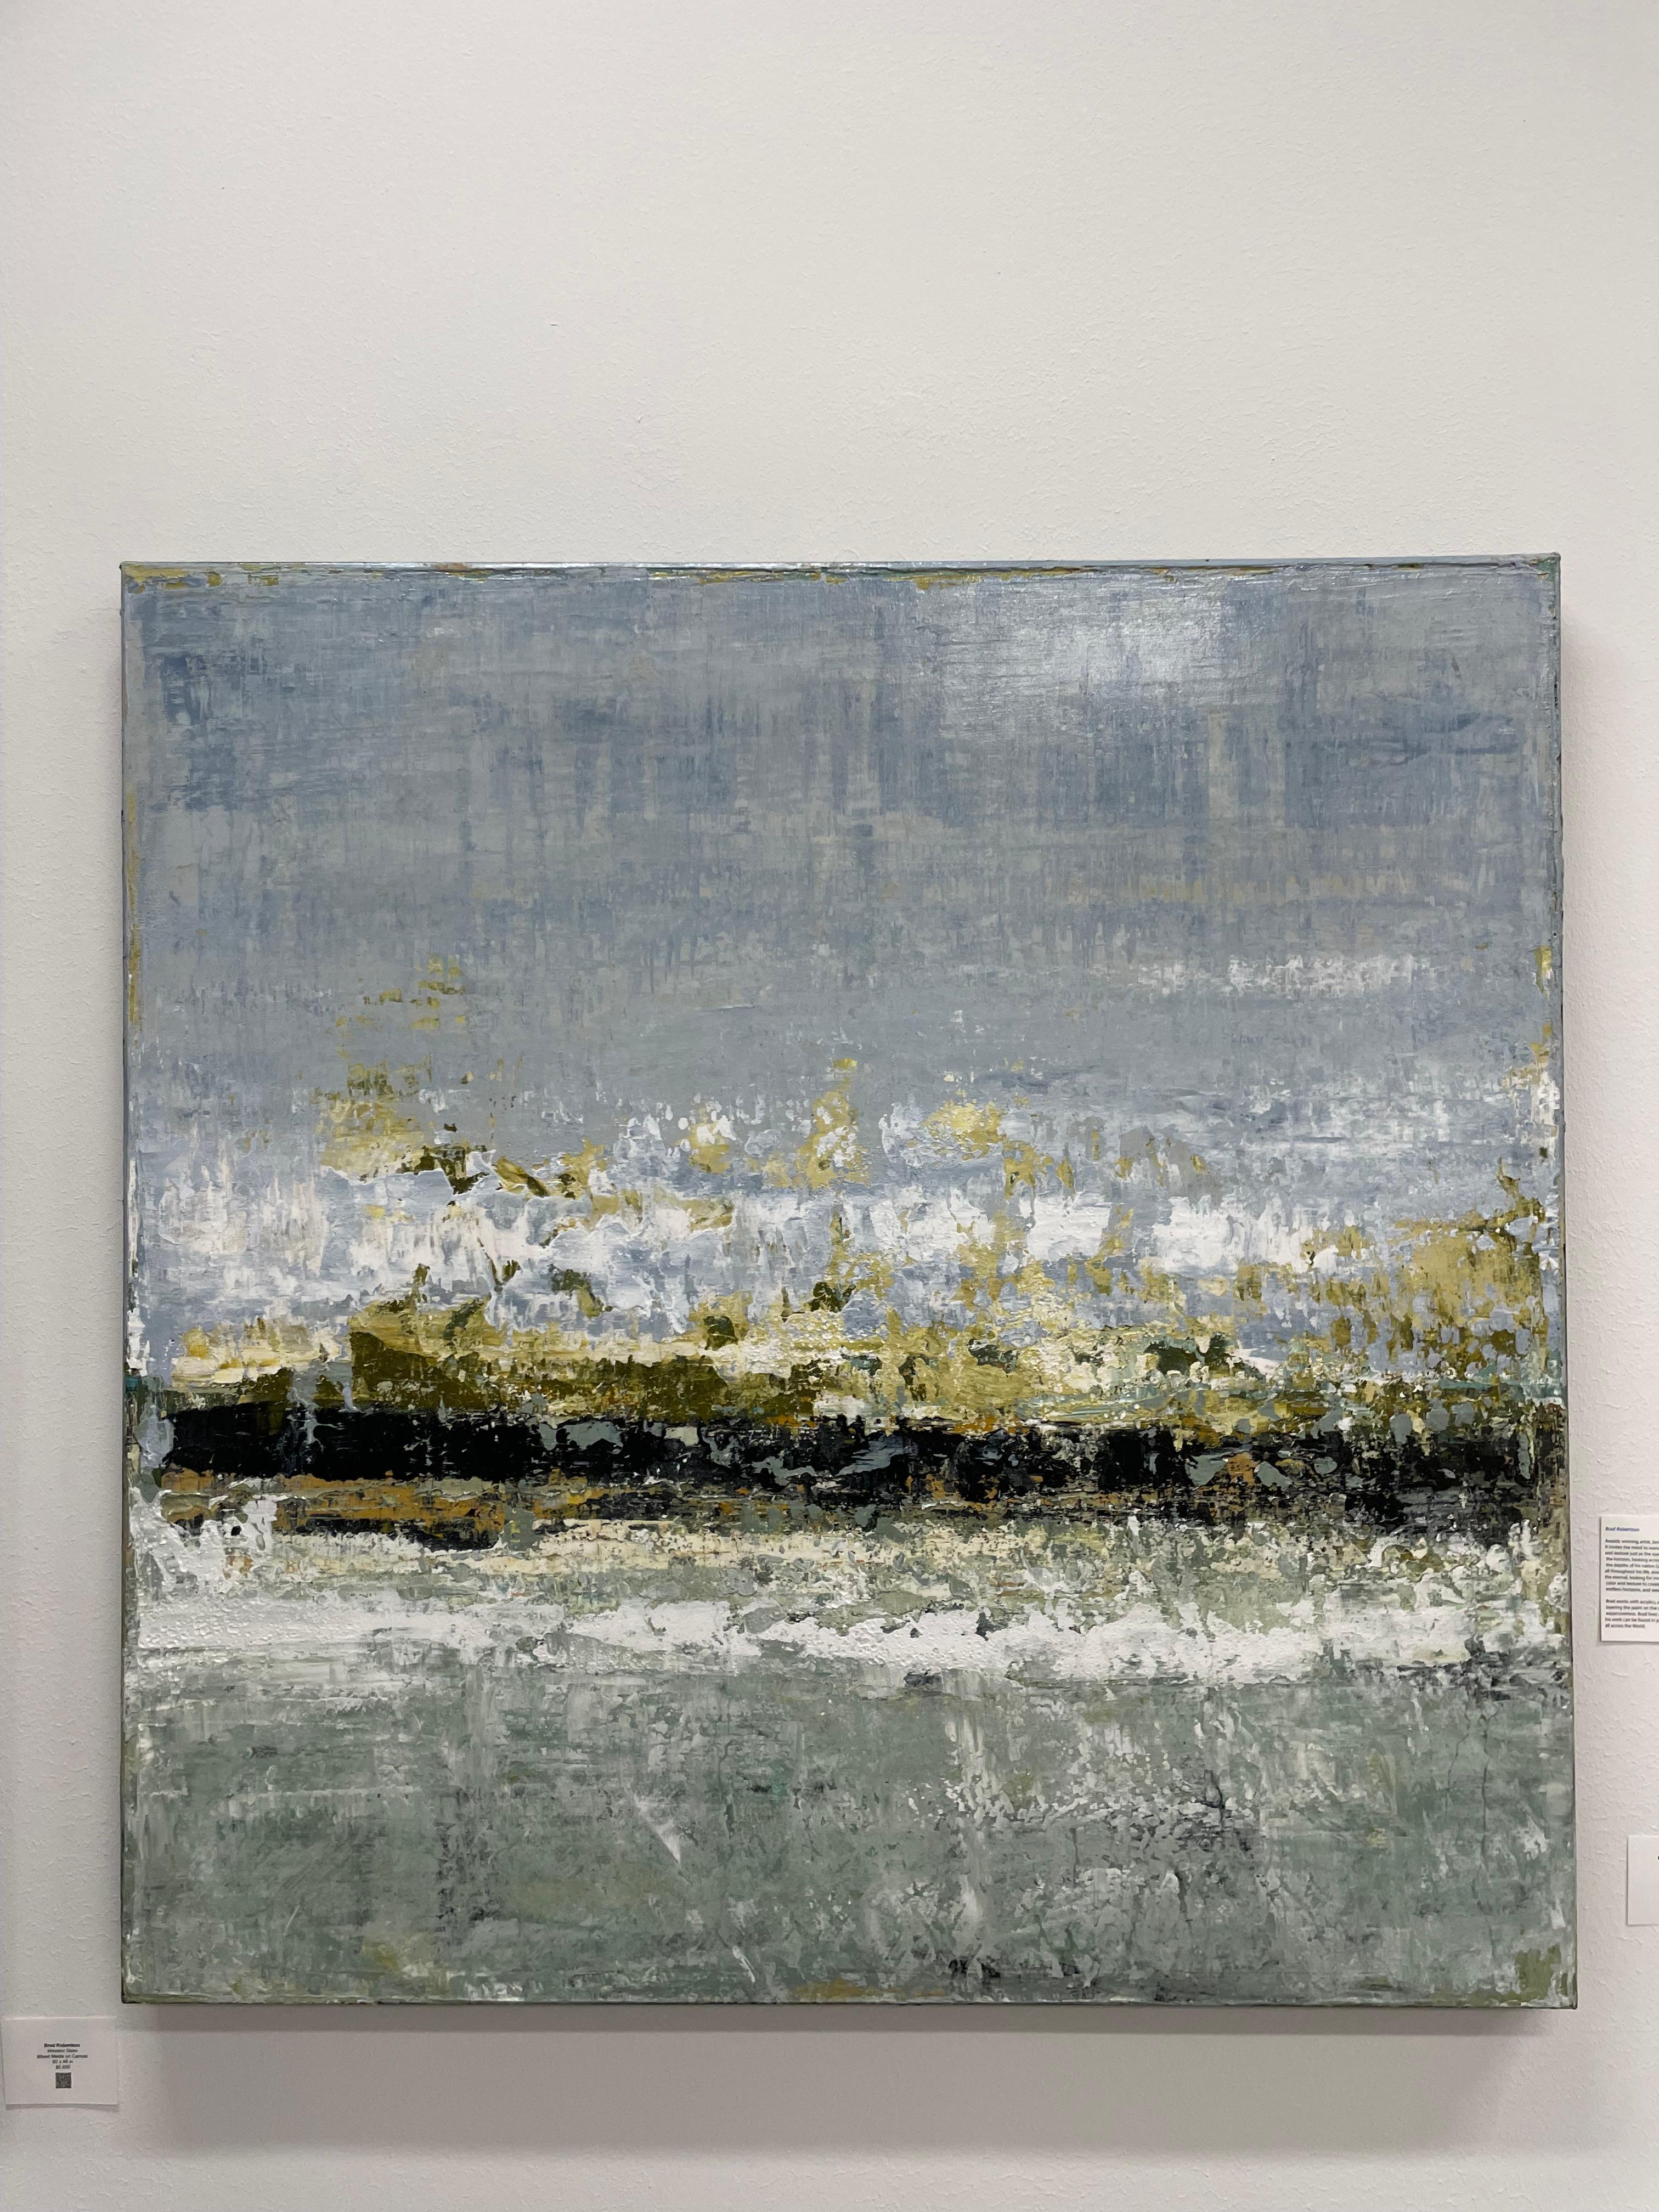 L'œuvre abstraite de Brad Robertson est composée de techniques mixtes sur toile et mesure 48 x 48 pouces. Son prix est de 5 000 $. Townes est né et a grandi dans une ville côtière, ce qui inspire ses peintures. Les paysages côtiers sont sa plus